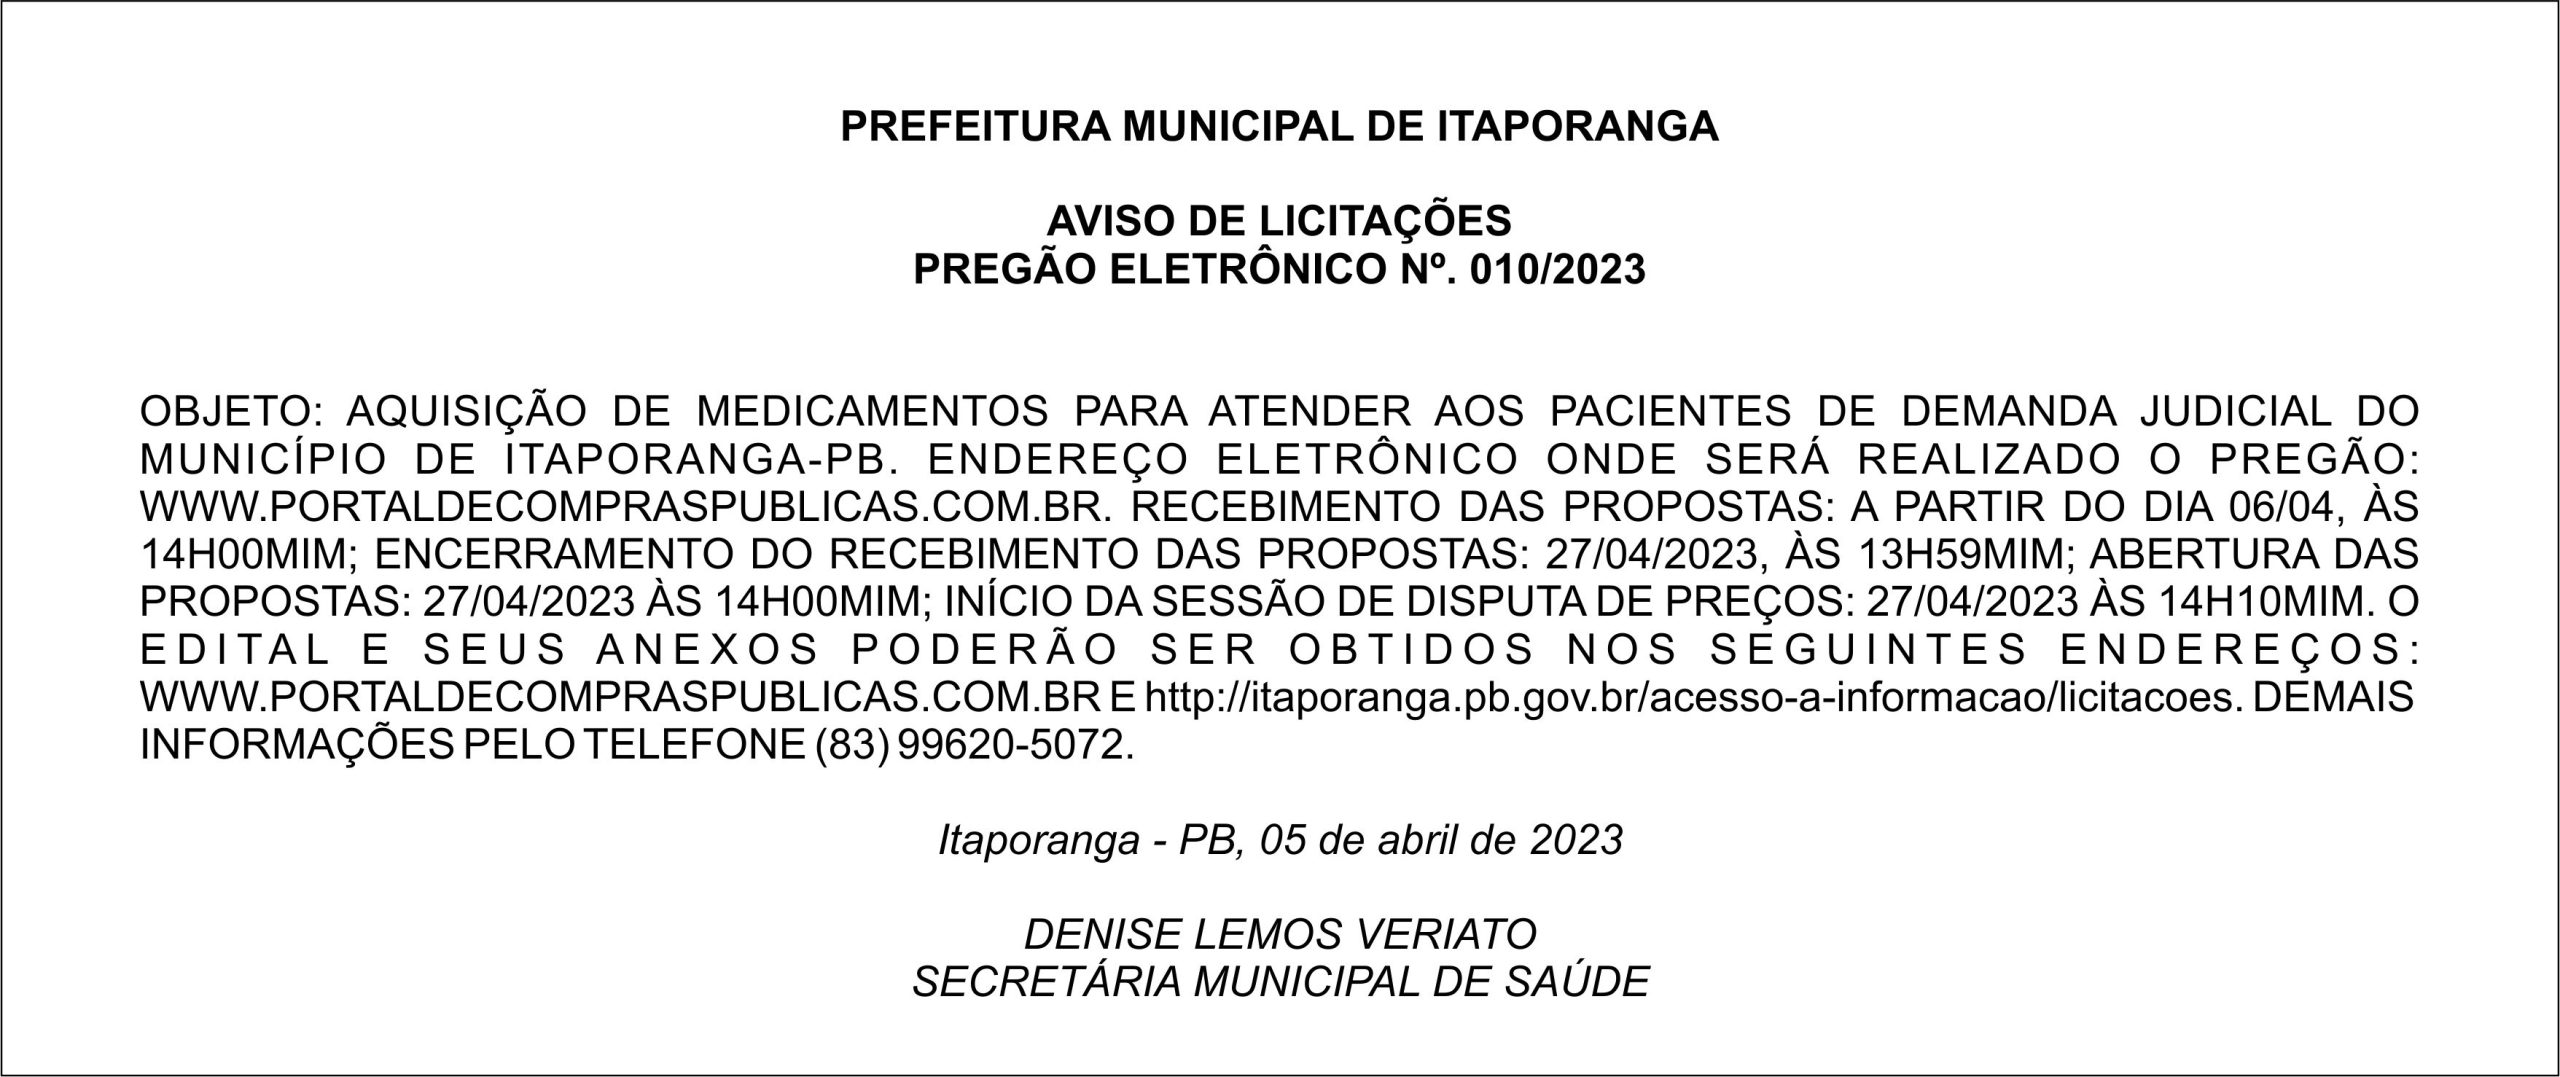 PREFEITURA MUNICIPAL DE ITAPORANGA – AVISO DE LICITAÇÕES – PREGÃO ELETRÔNICO Nº. 010/2023